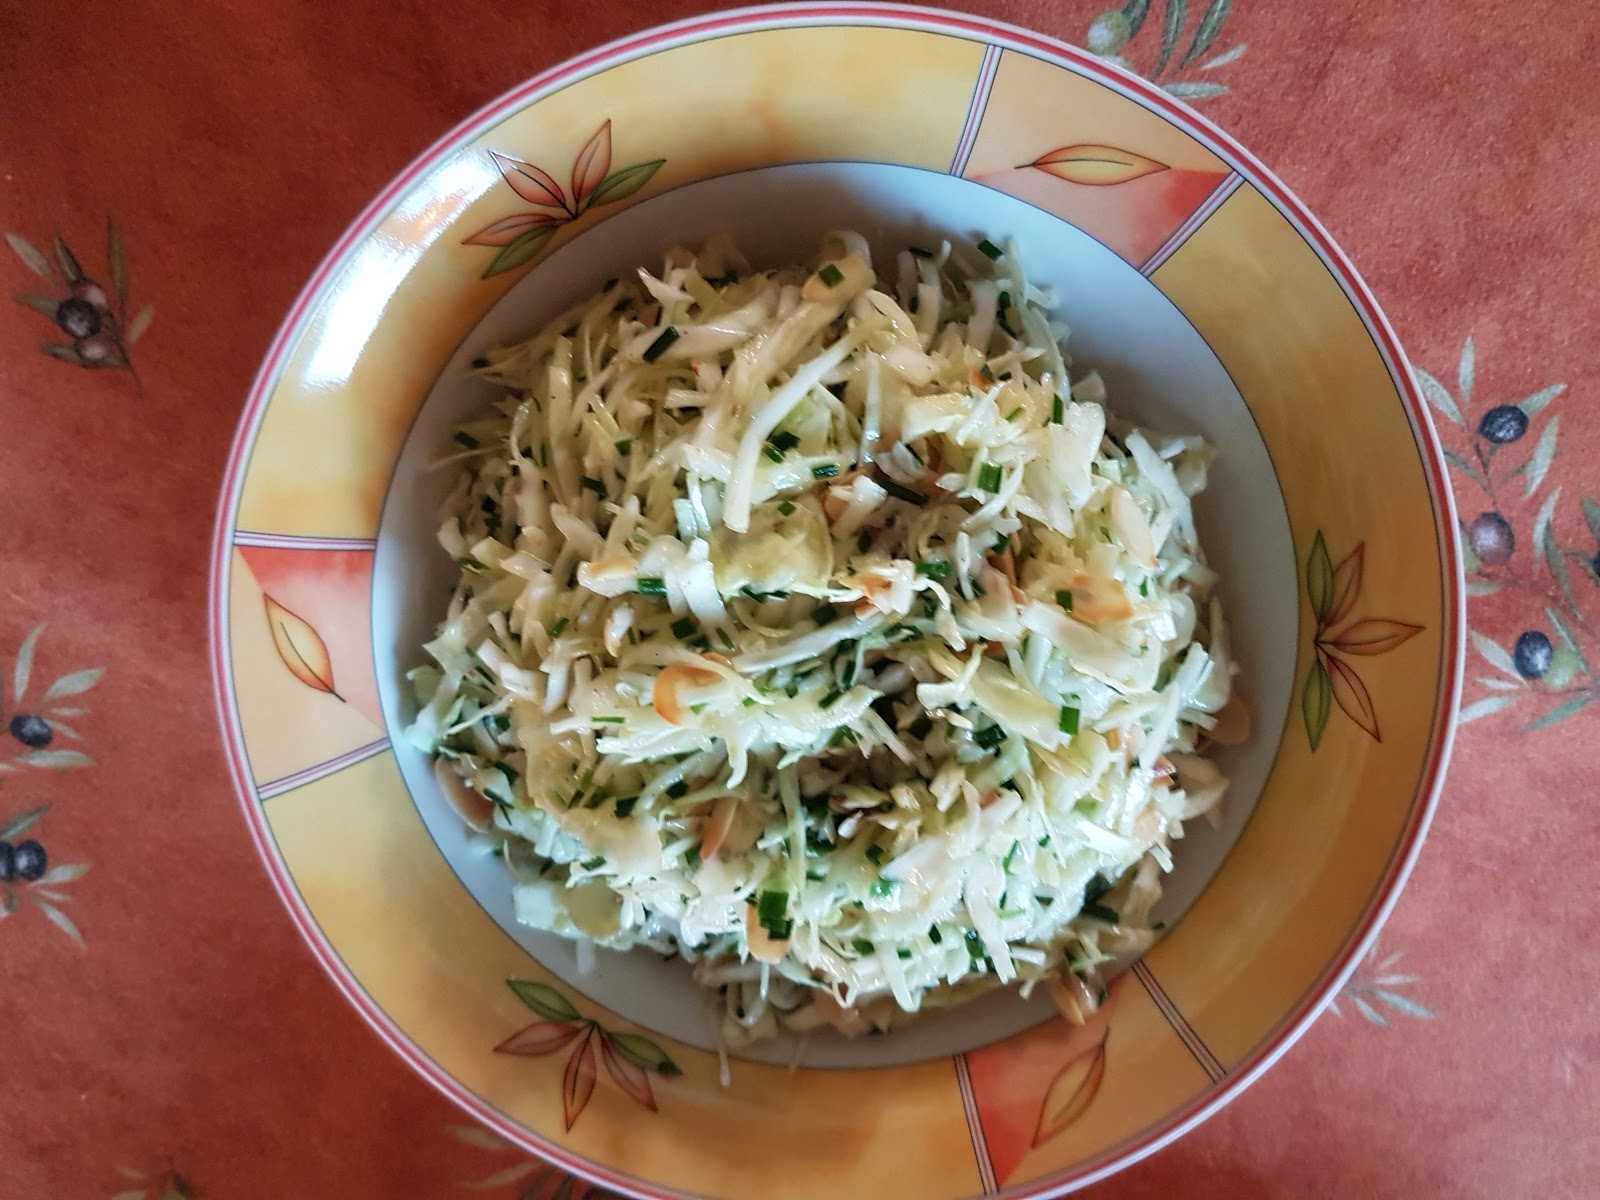 Aus dem Lameng: Spitzkohlsalat mit Schnittlauch und Mandelblättchen